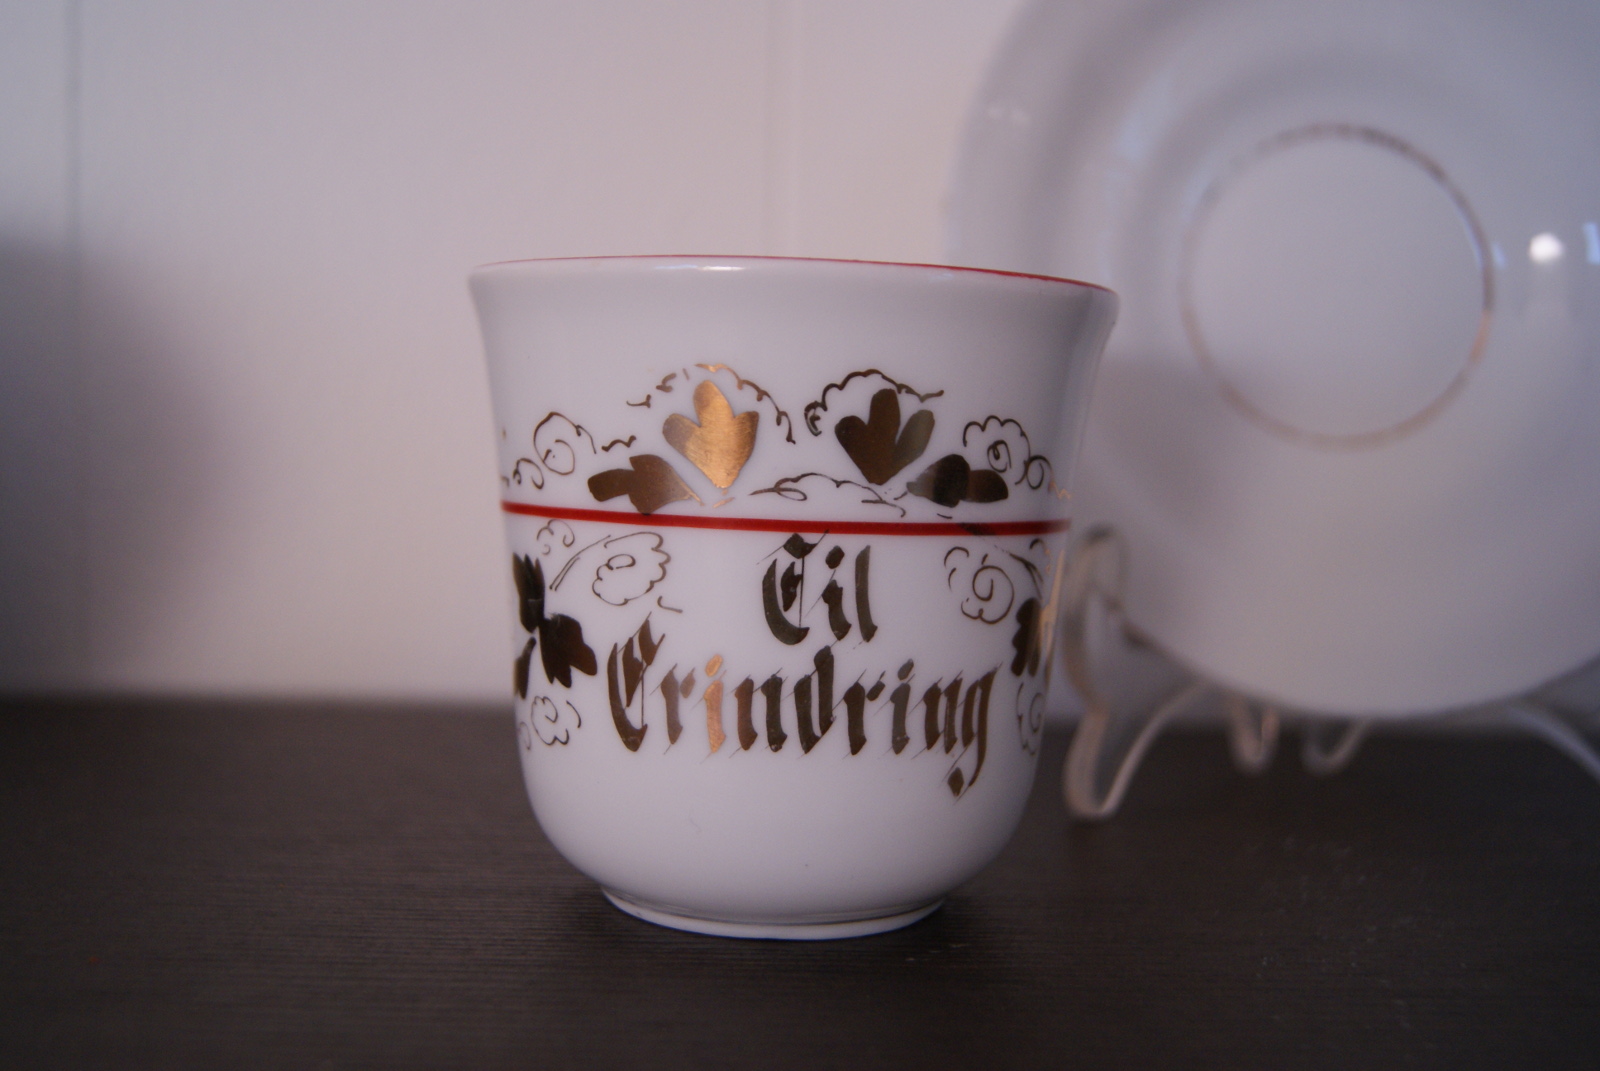 Porsgrund kopp med skål, gull dekor, rødt bånd og inskripsjon: 